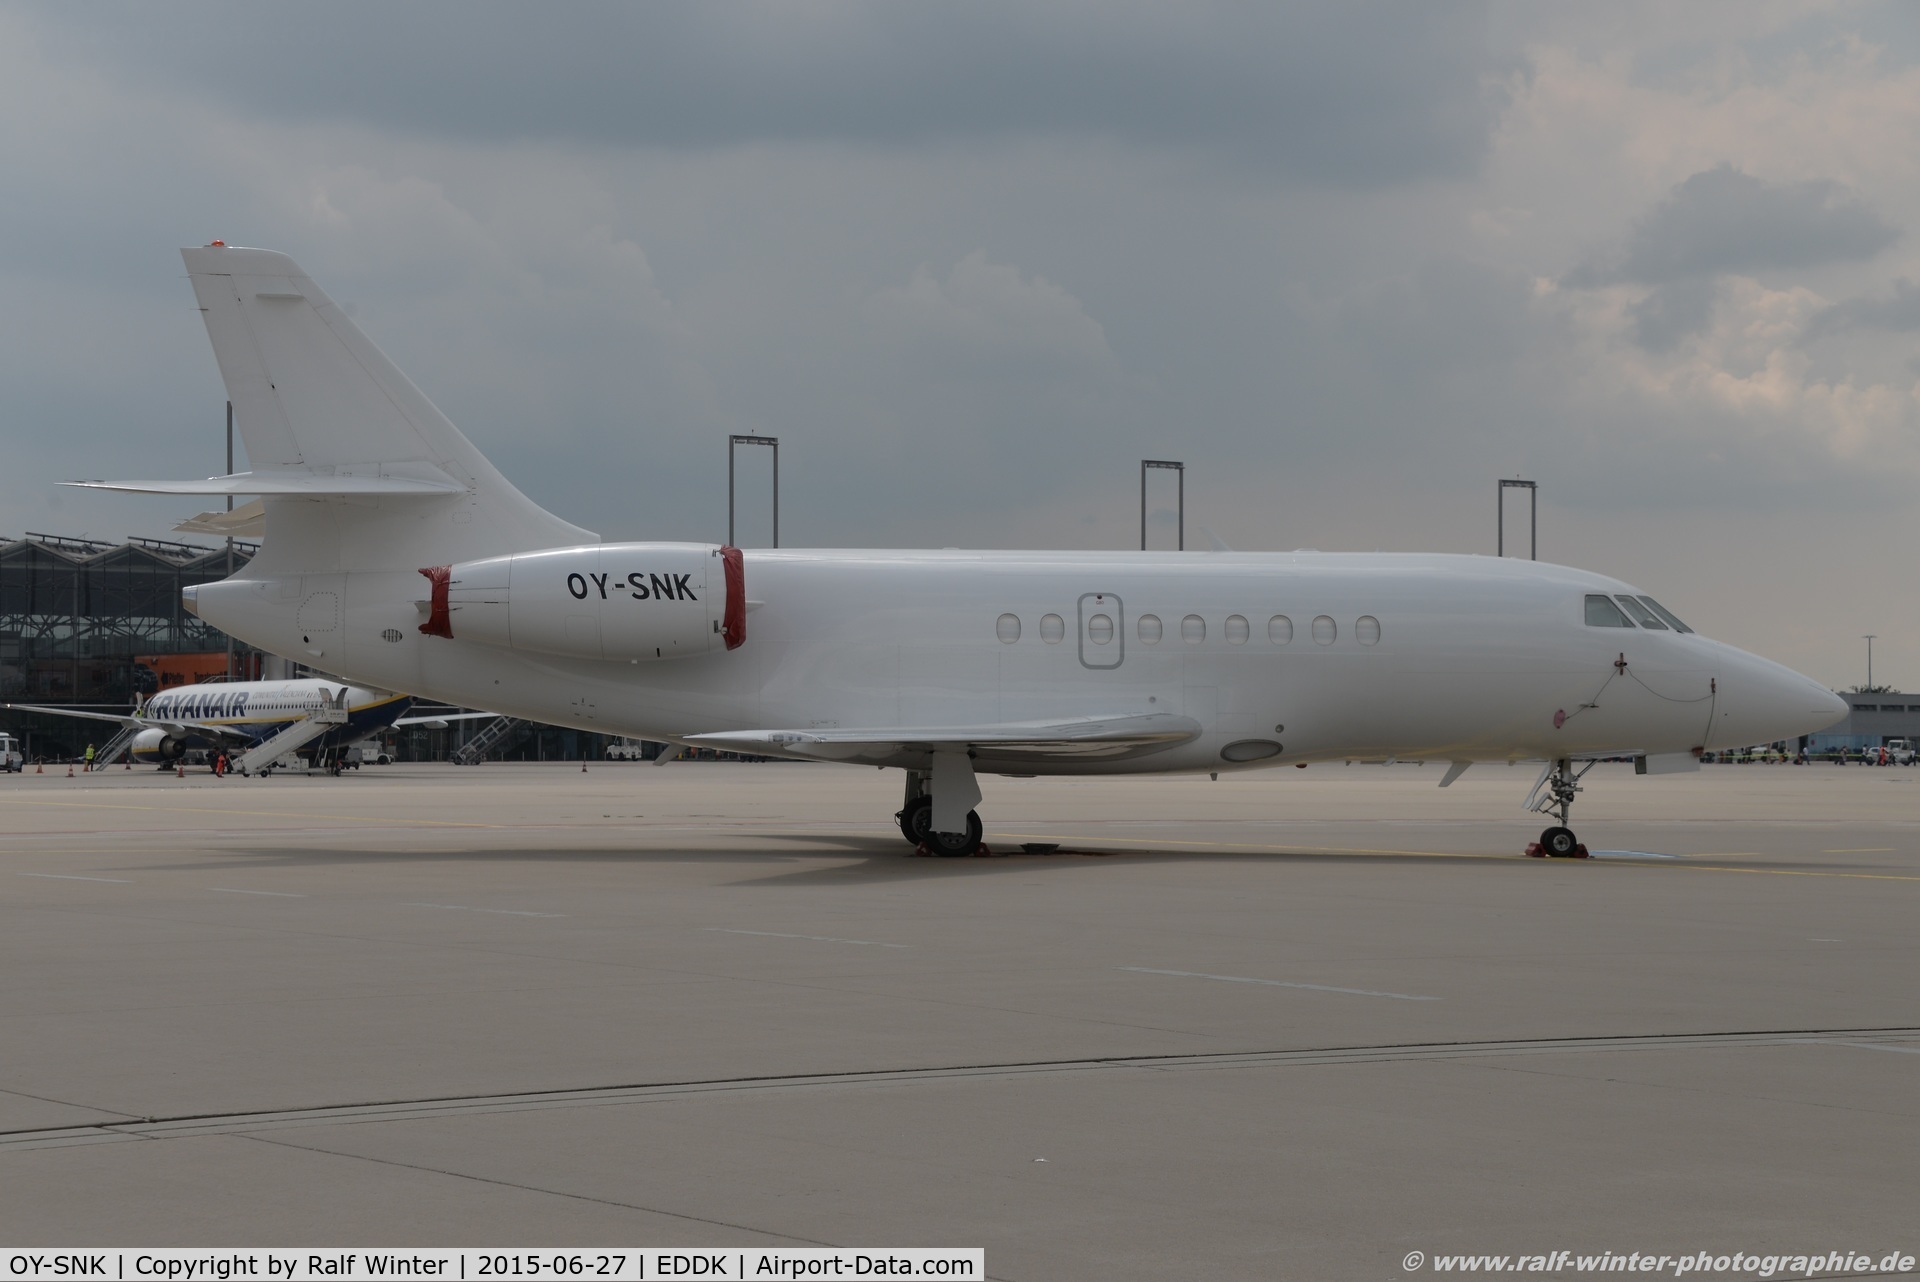 OY-SNK, 2005 Dassault Falcon 2000LX C/N 223, Dassault Facon 2000 - MMD Air Alsie - 223 - OY-SNK - 27.06.2015 - CGN